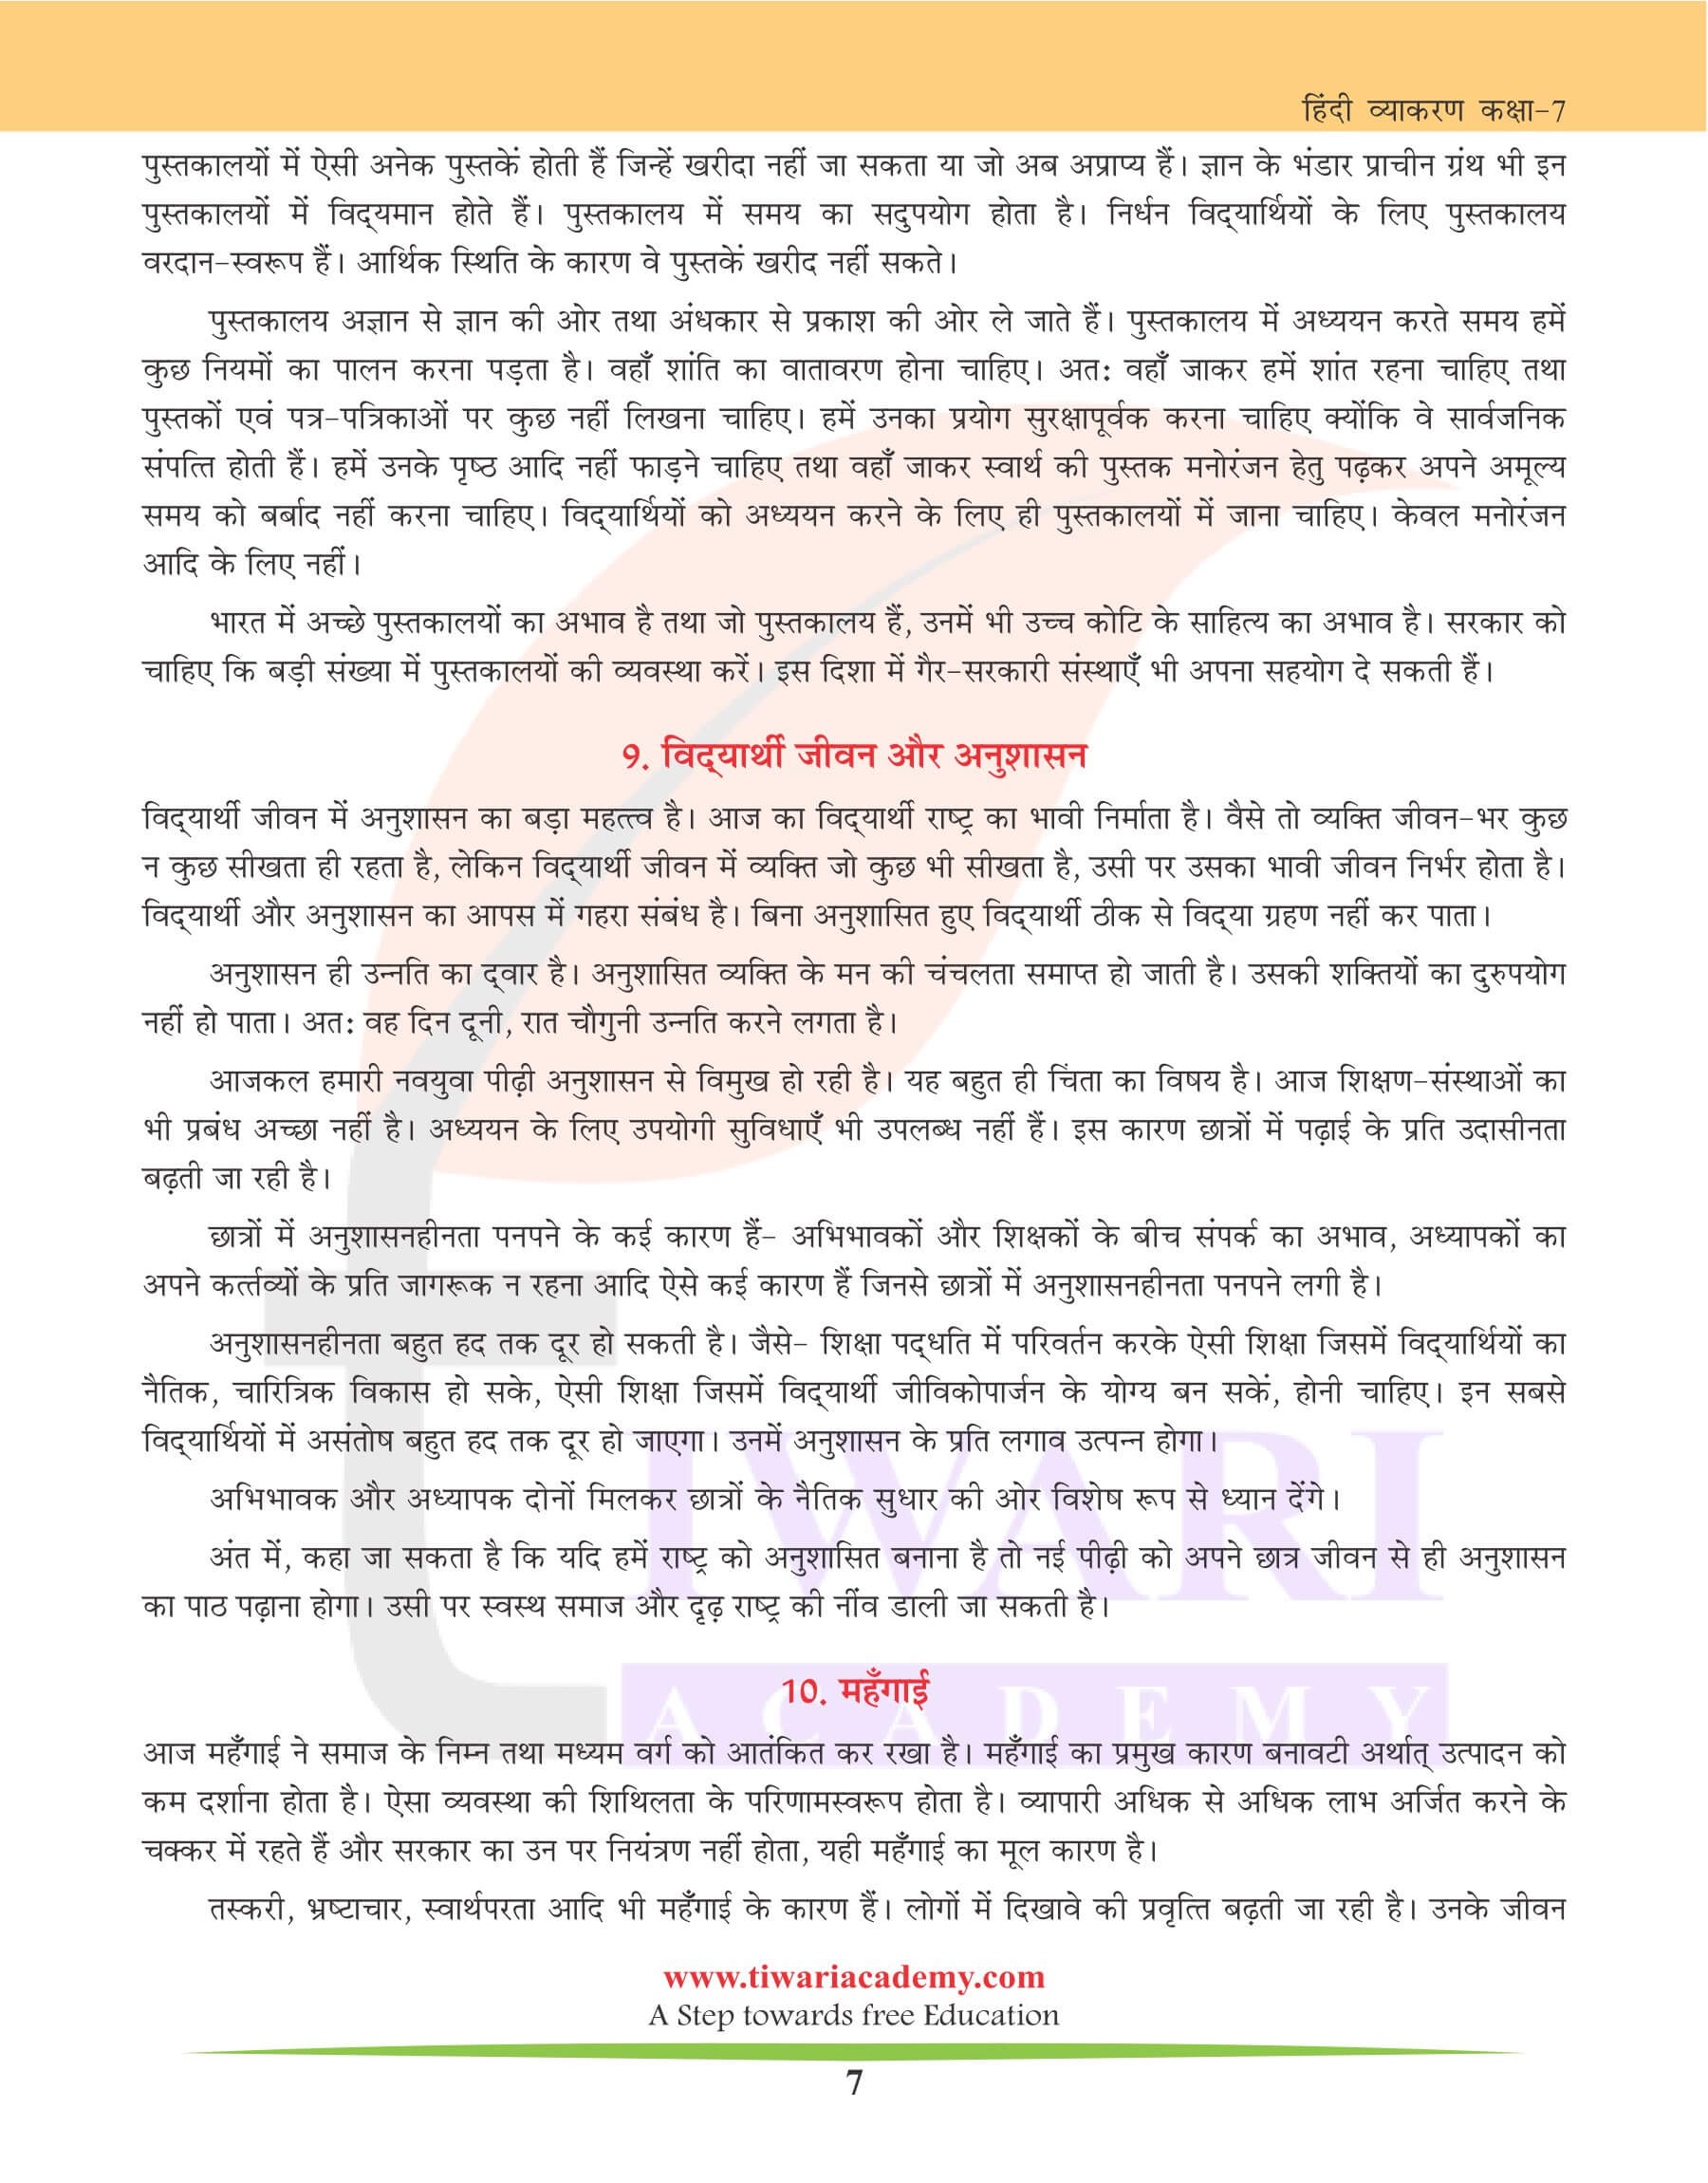 कक्षा 7 हिंदी व्याकरण में निबंध लेखन के लिए अभ्यास